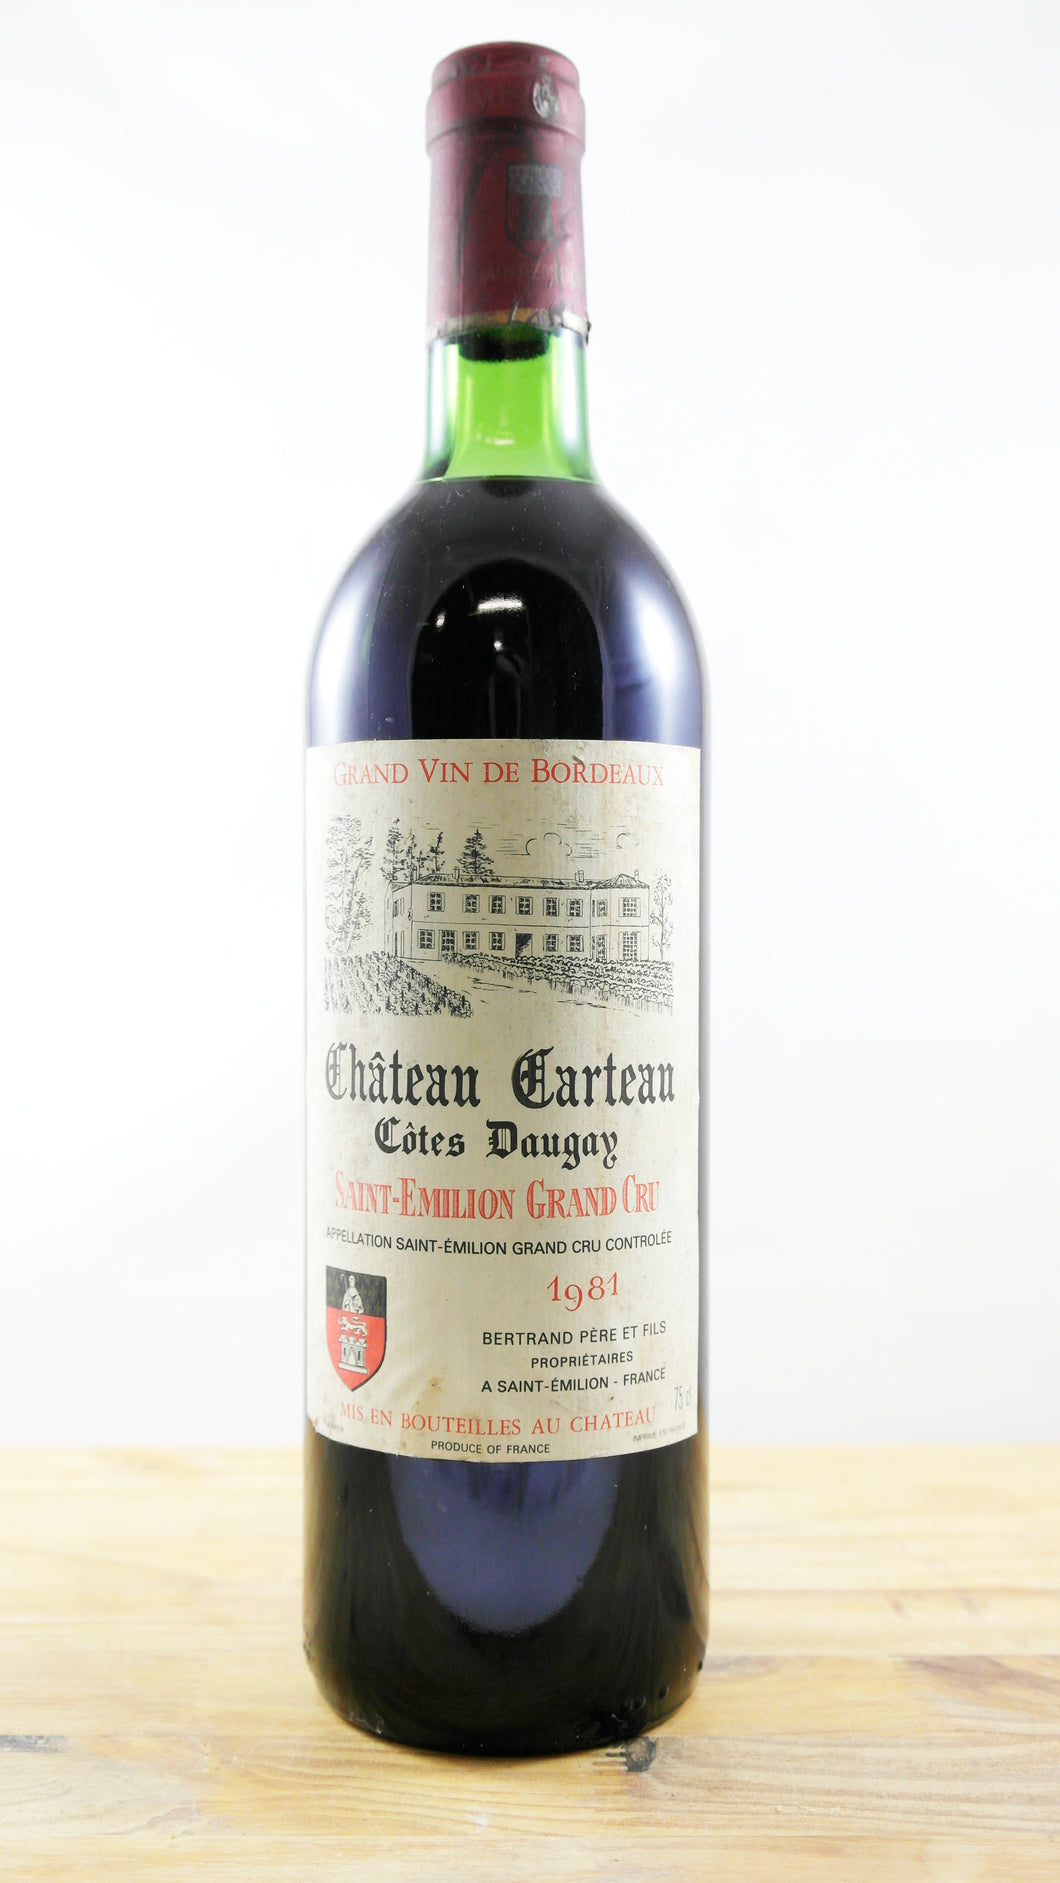 Vin Année 1981 Château Carteau Terte d'Augay